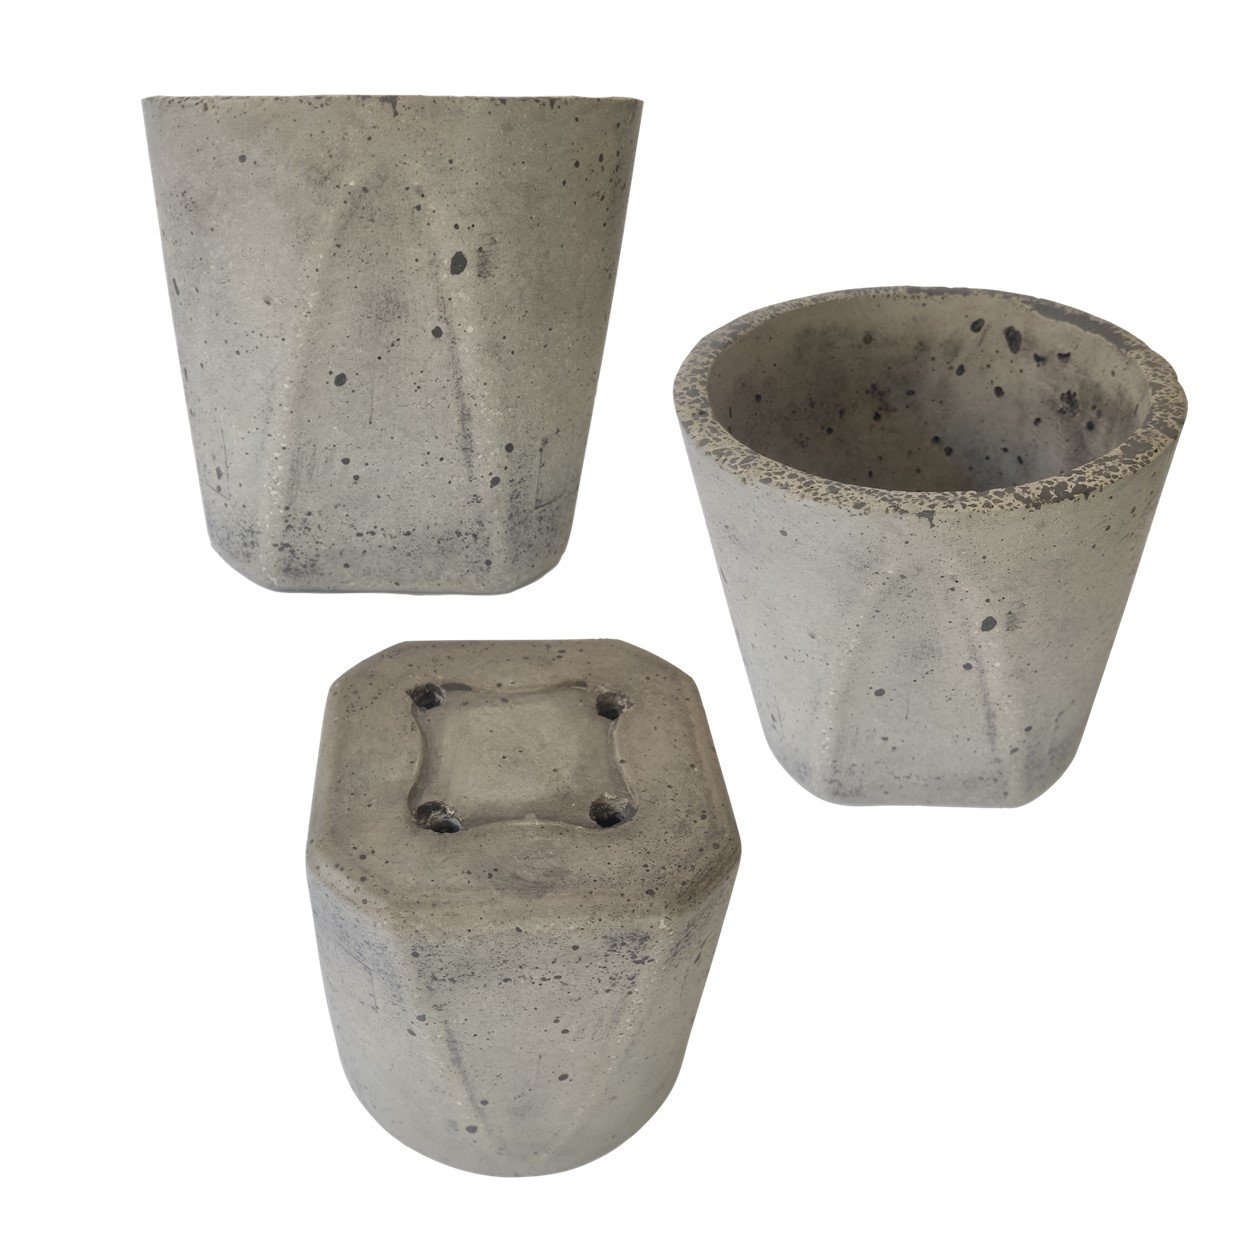 Vaso pote (19x17 cm) de cimento leve para planta:1- Preto - 1